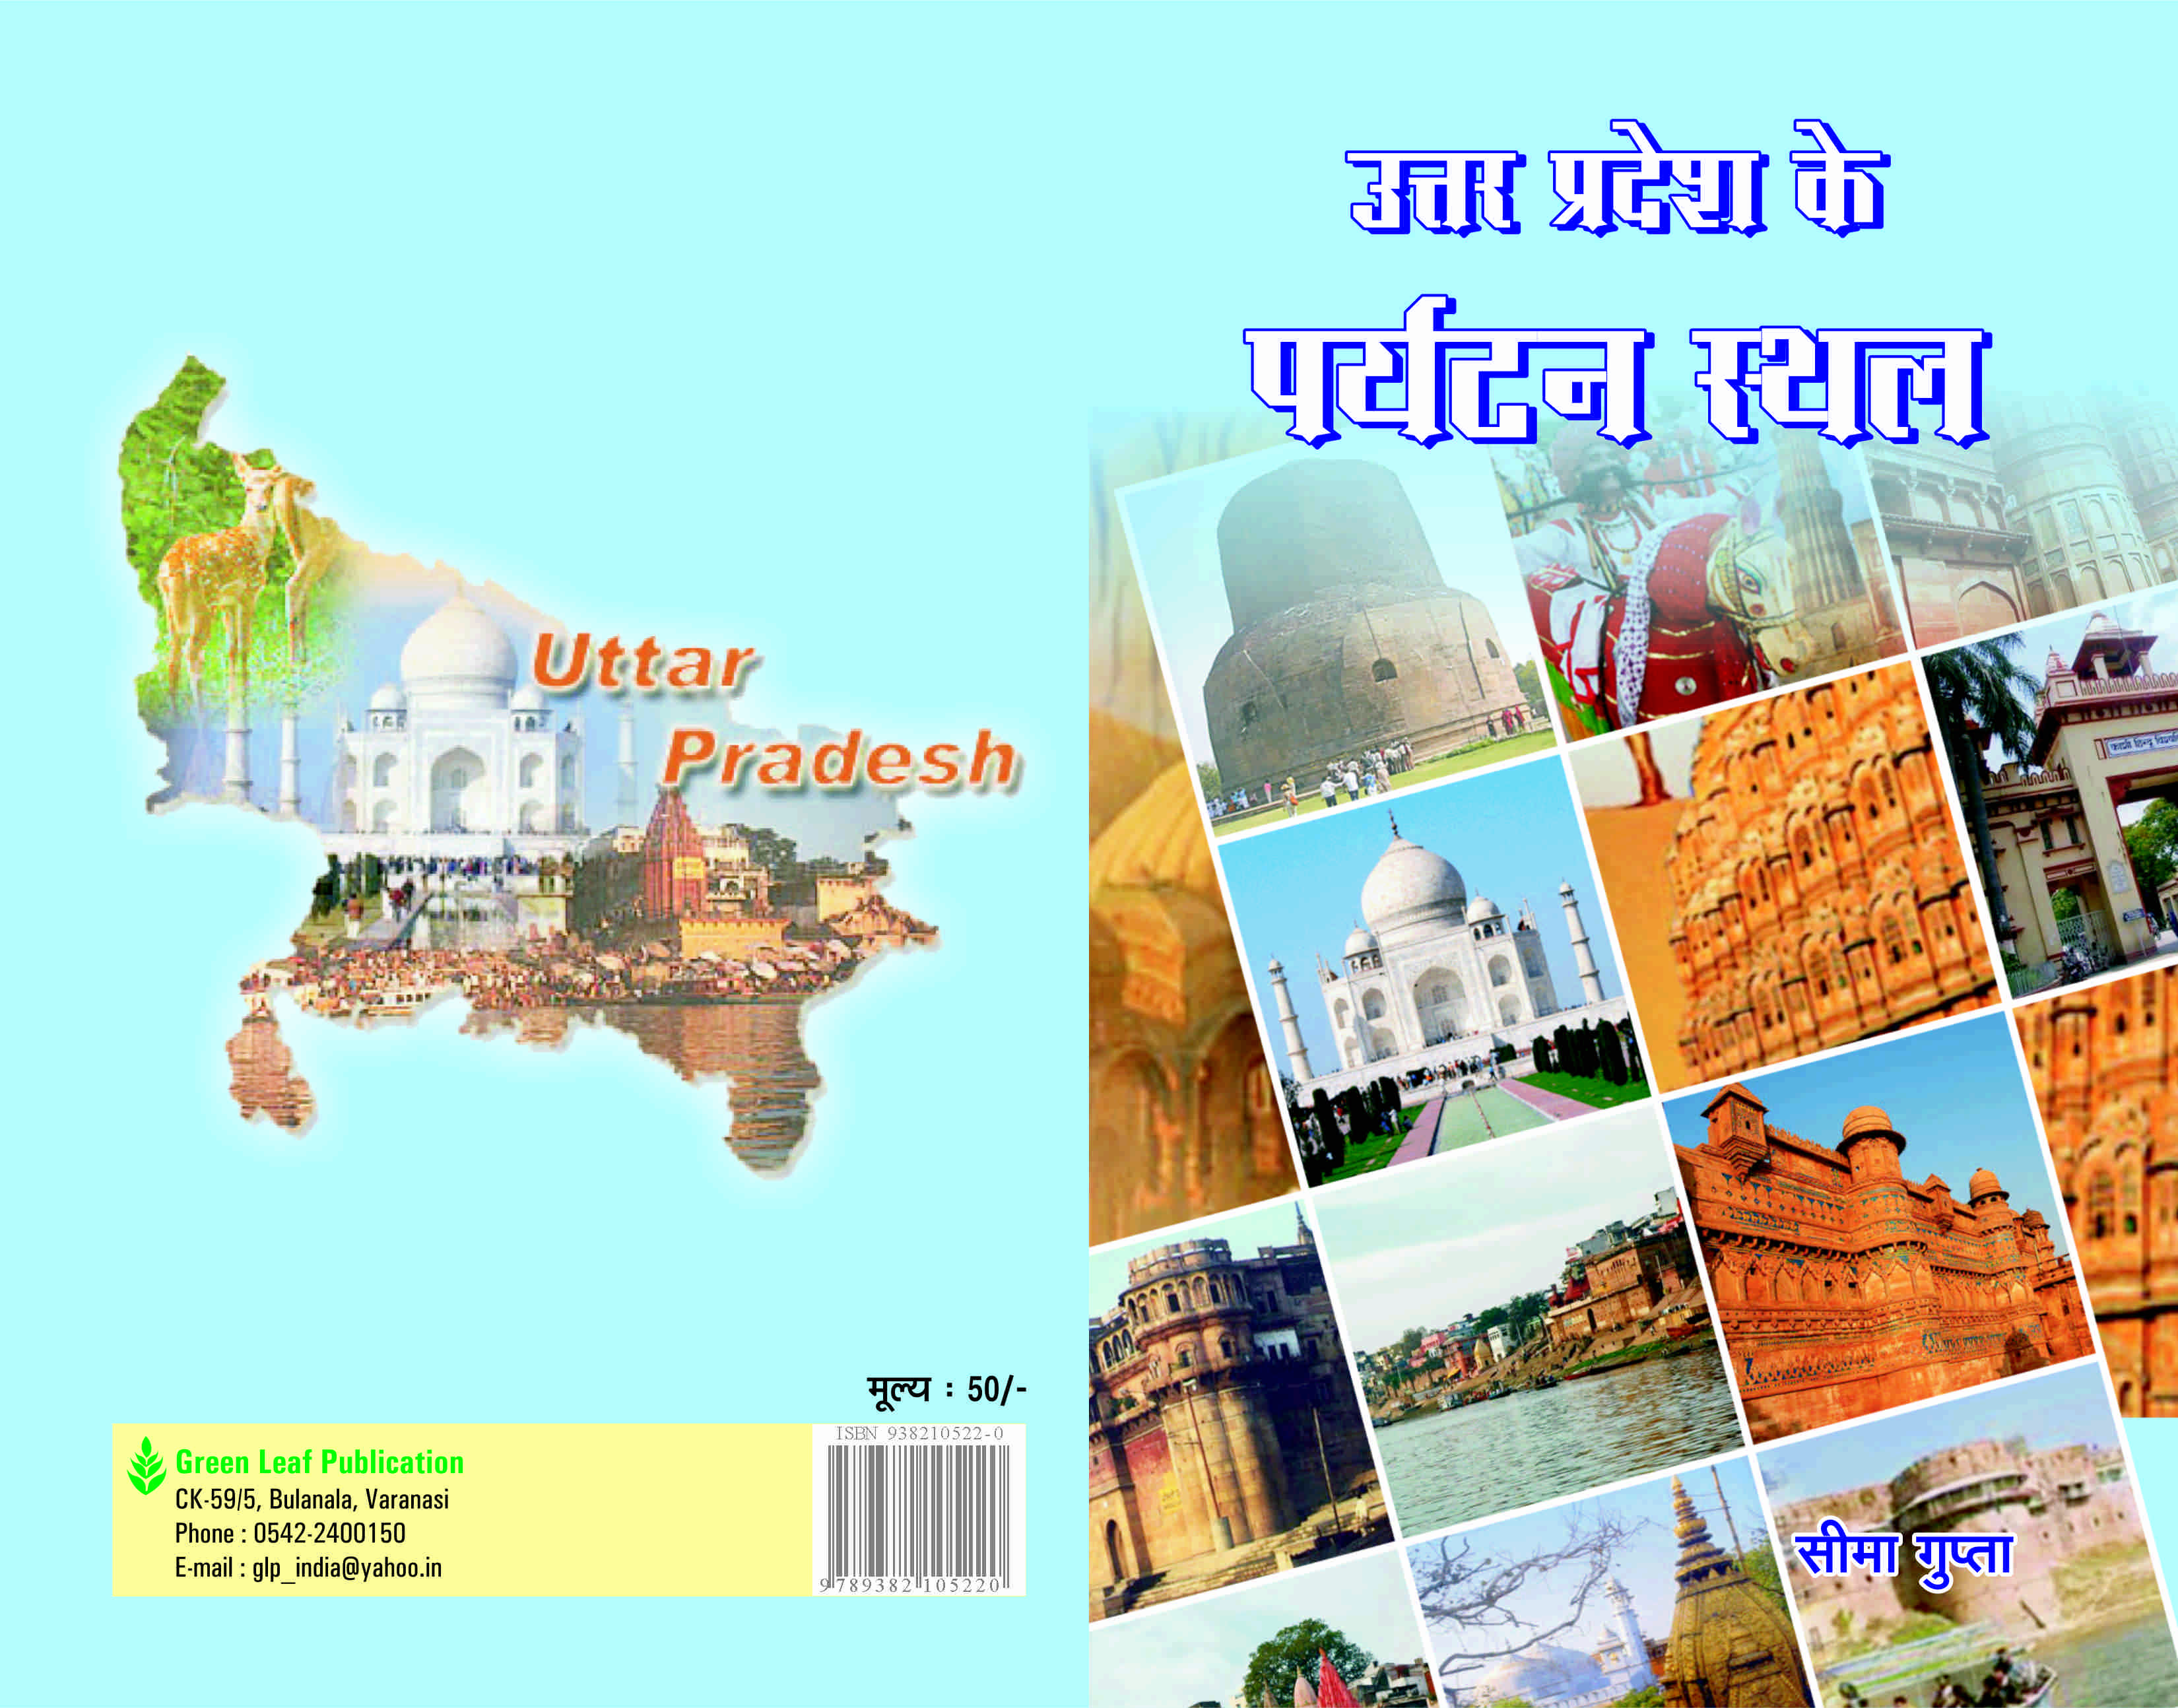 Uttar Pradesh Ke Paryatan Asthal.jpg